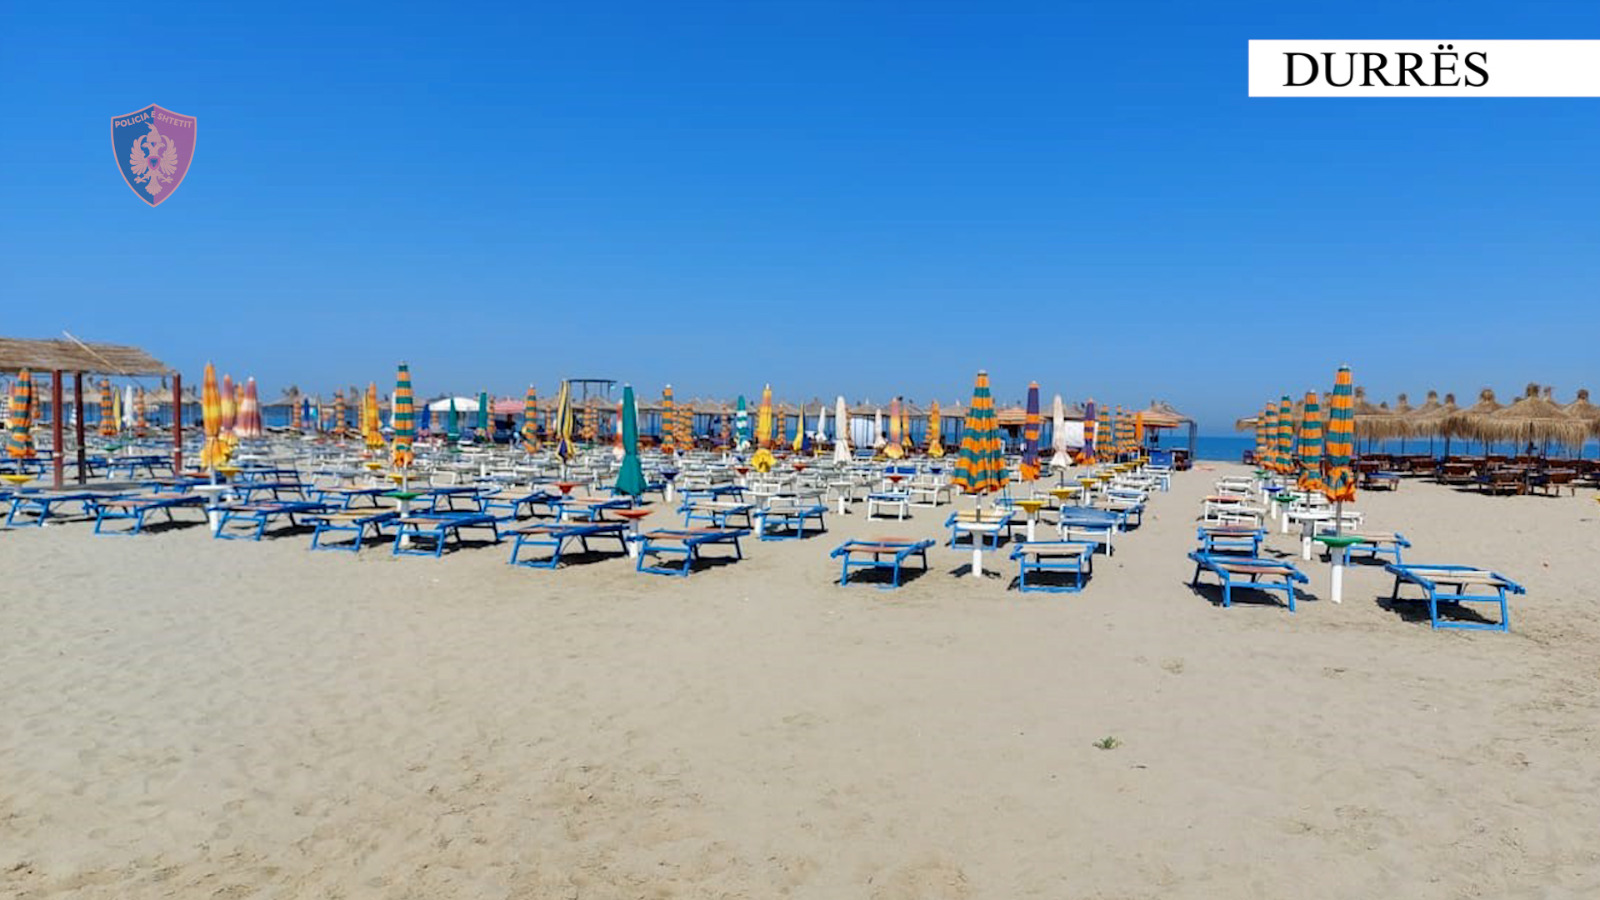 Durrës, sekuestrohen 183 shezlongë dhe çadra në plazhin Sektor Rinia, procedohen pronarët